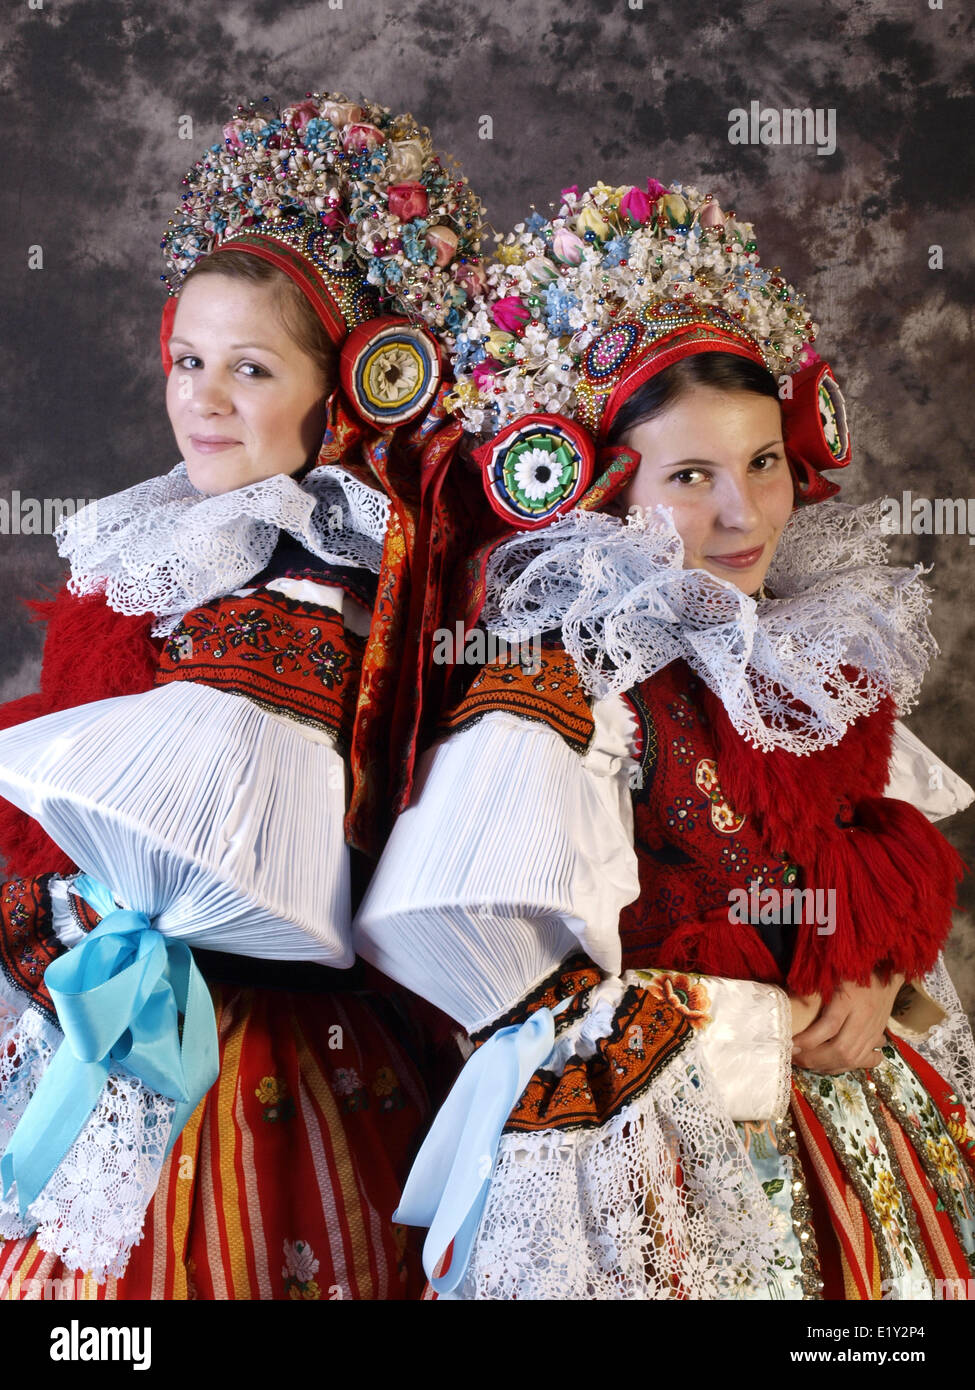 Folklor dess from Vlcnov Stock Photo